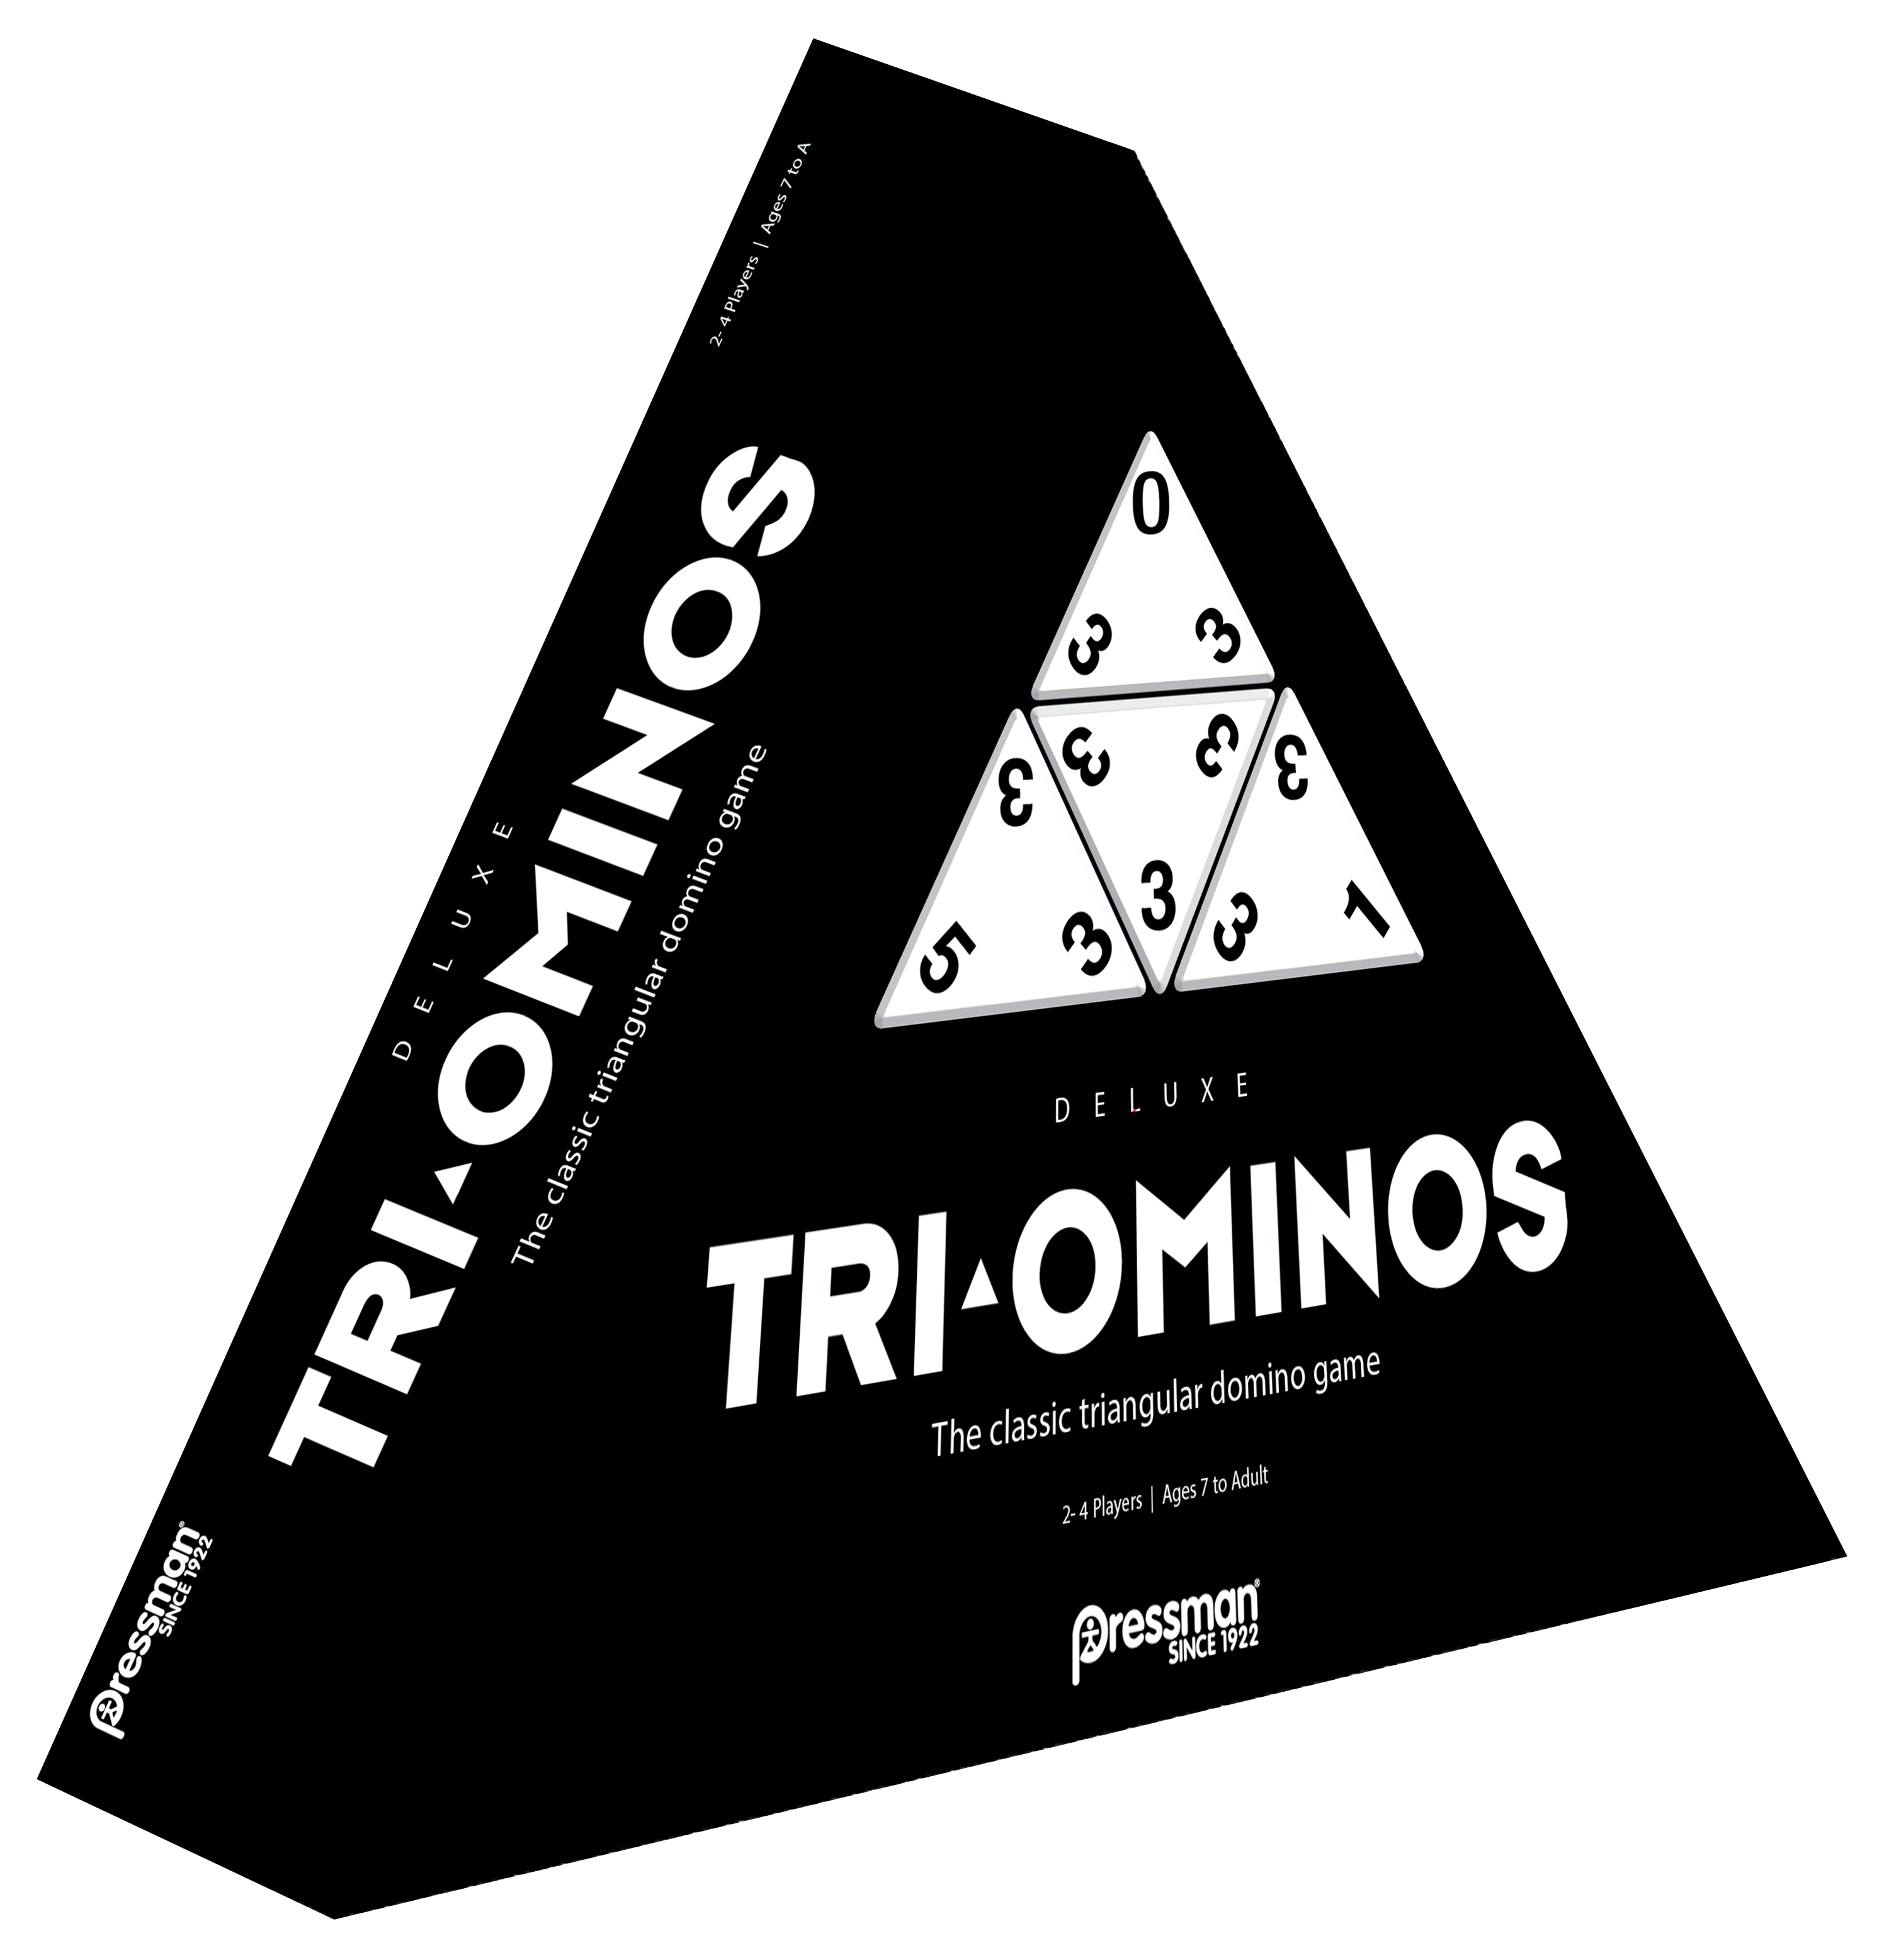 Triomino Junior - Goliath Ed 2019 TBE